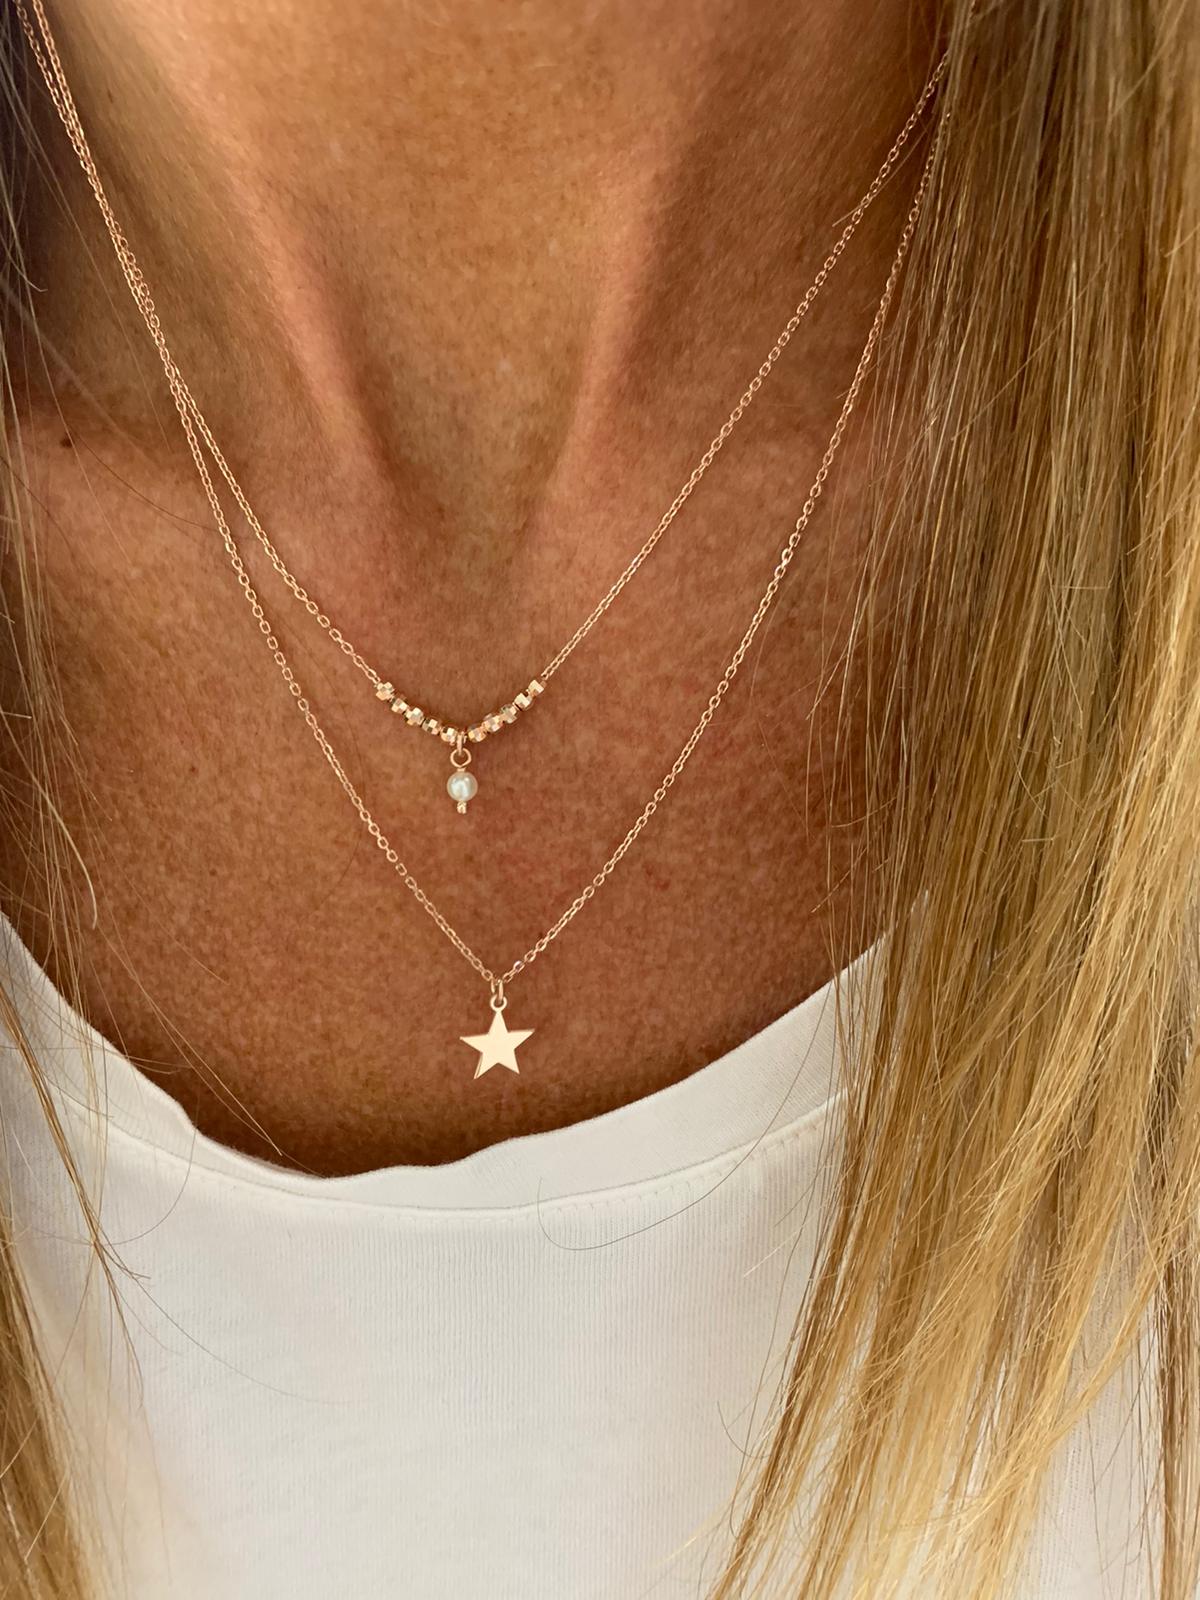 Unica collana a due fili con pepite diamantate rosé, una piccola perla da 0,4 mm pendente ed una stella da 0,8 mm pendente bagnata in oro rosé